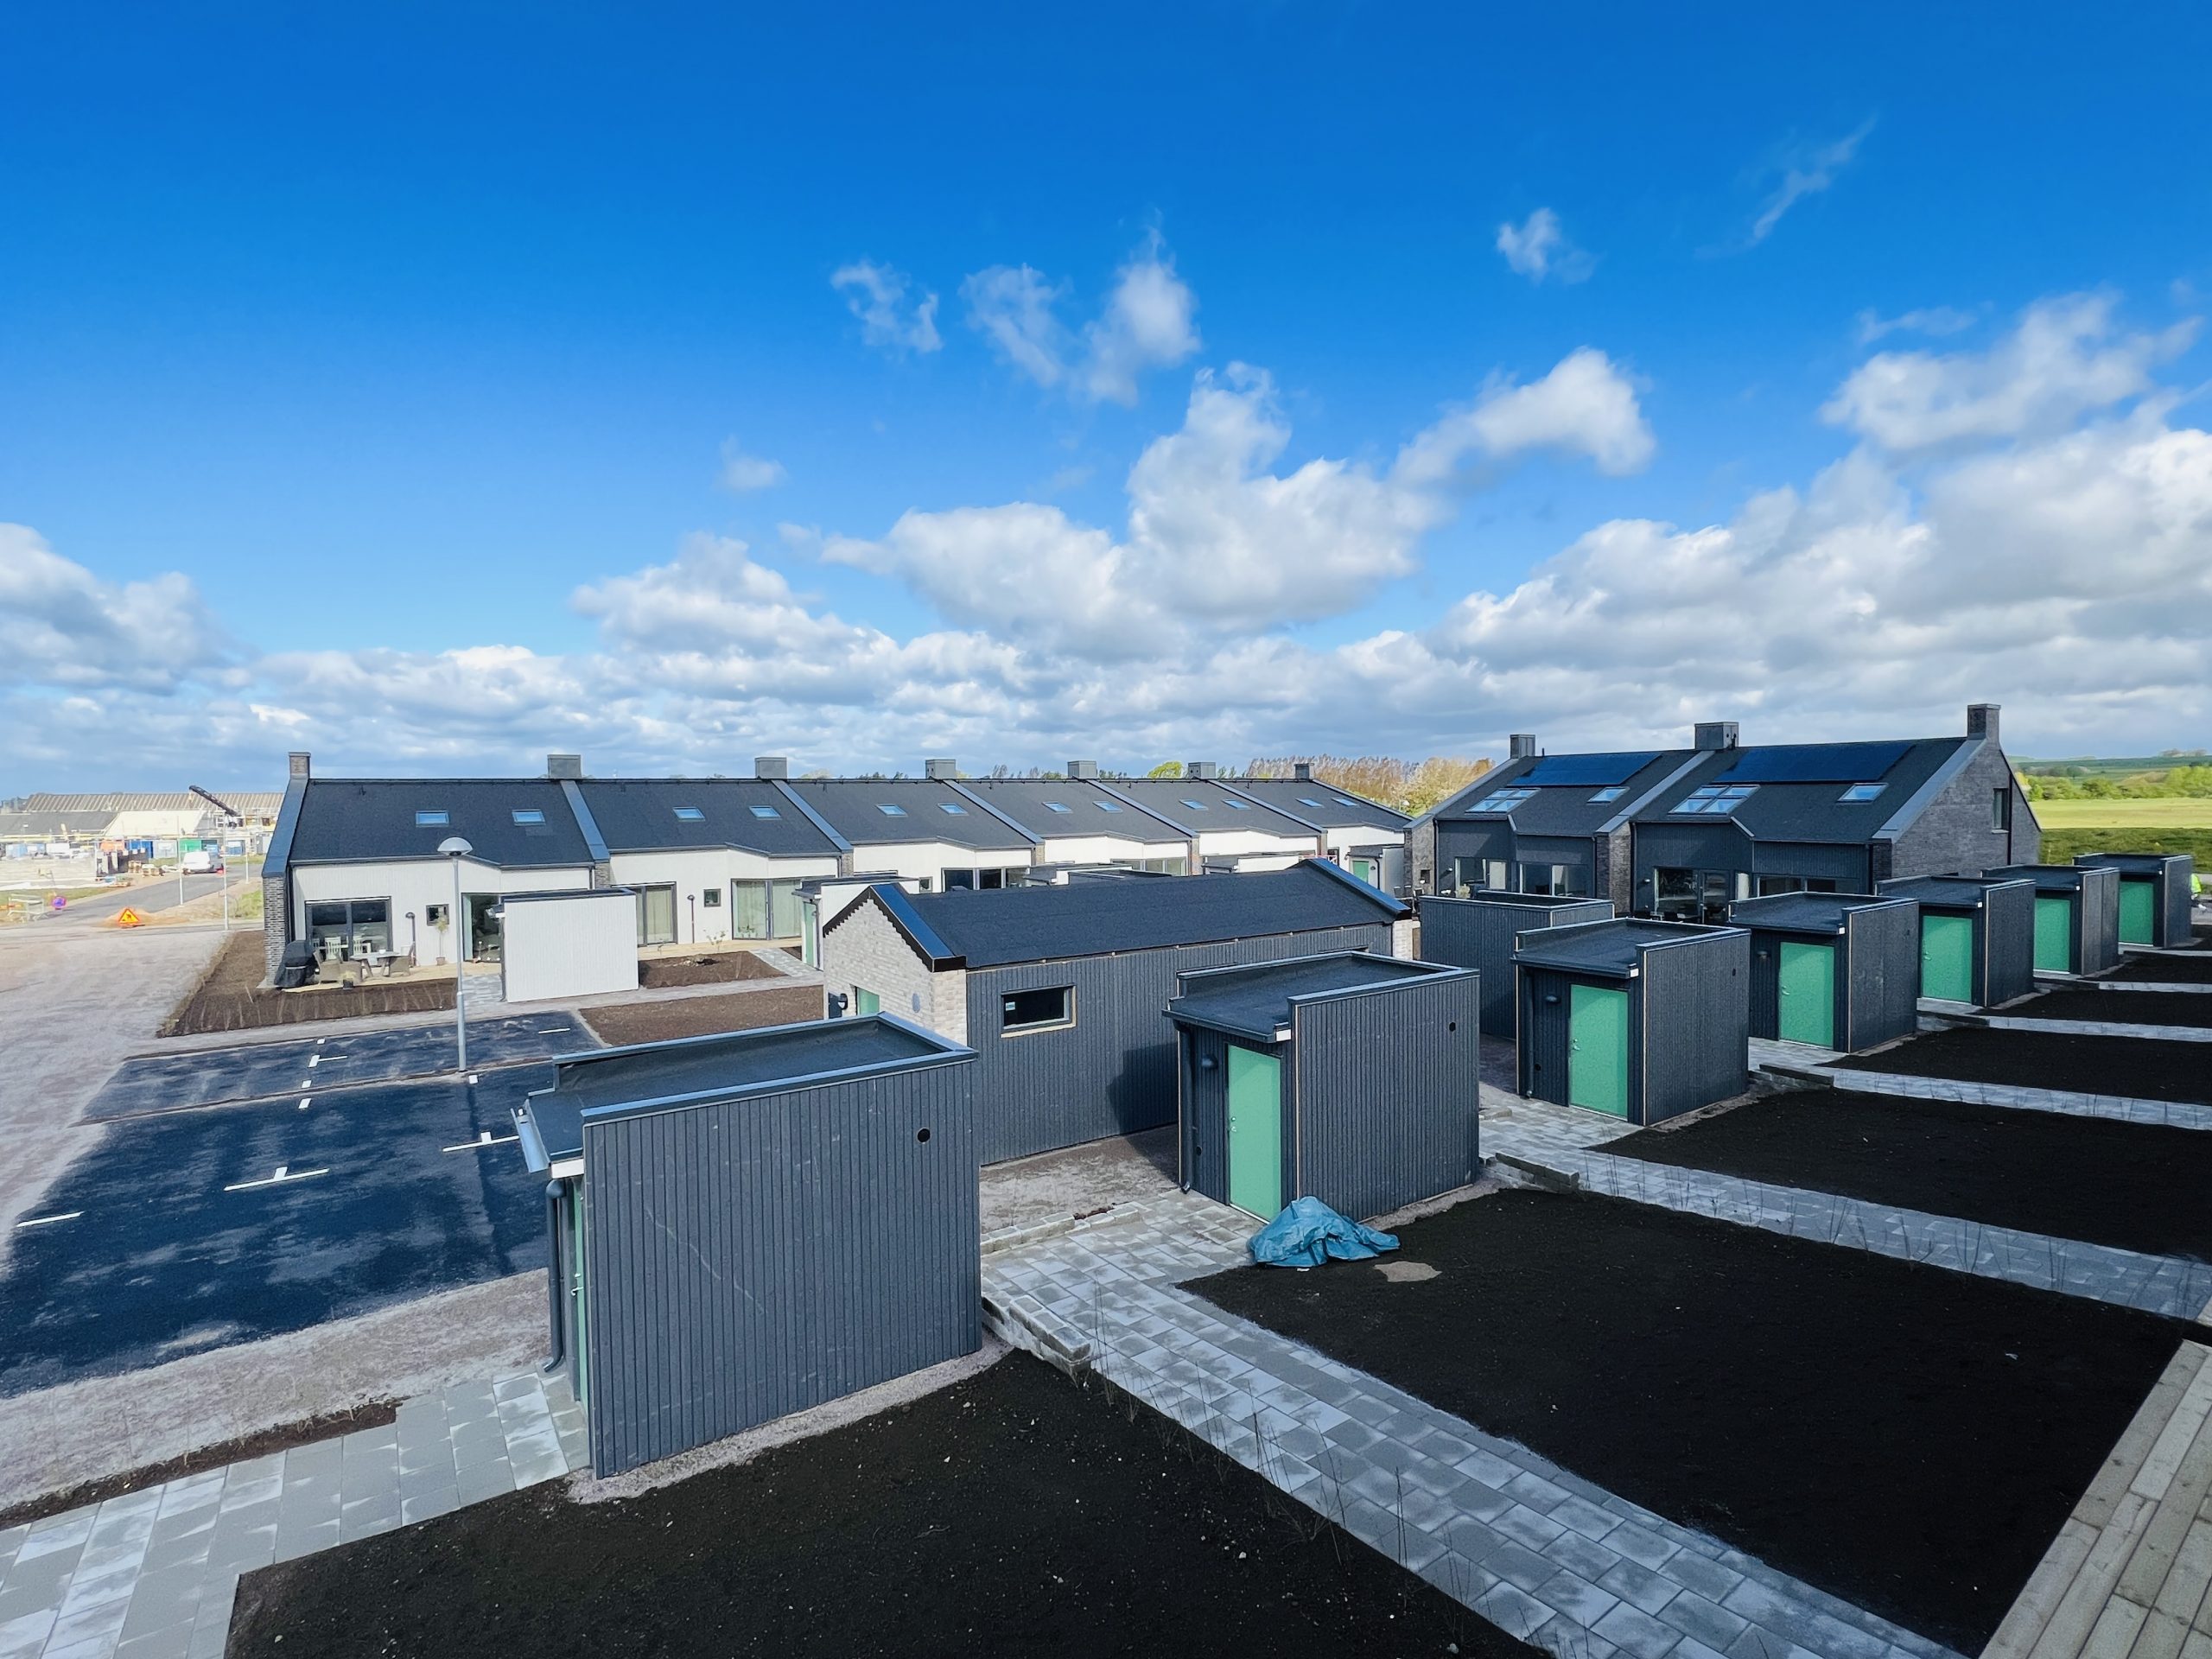 Treano har uppfört en nyproduktion av 15 radhus med en blandning av 1-plans, 1 ½-plans samt 2-plans hus. Samtliga hus har solcellspaneler på taket.